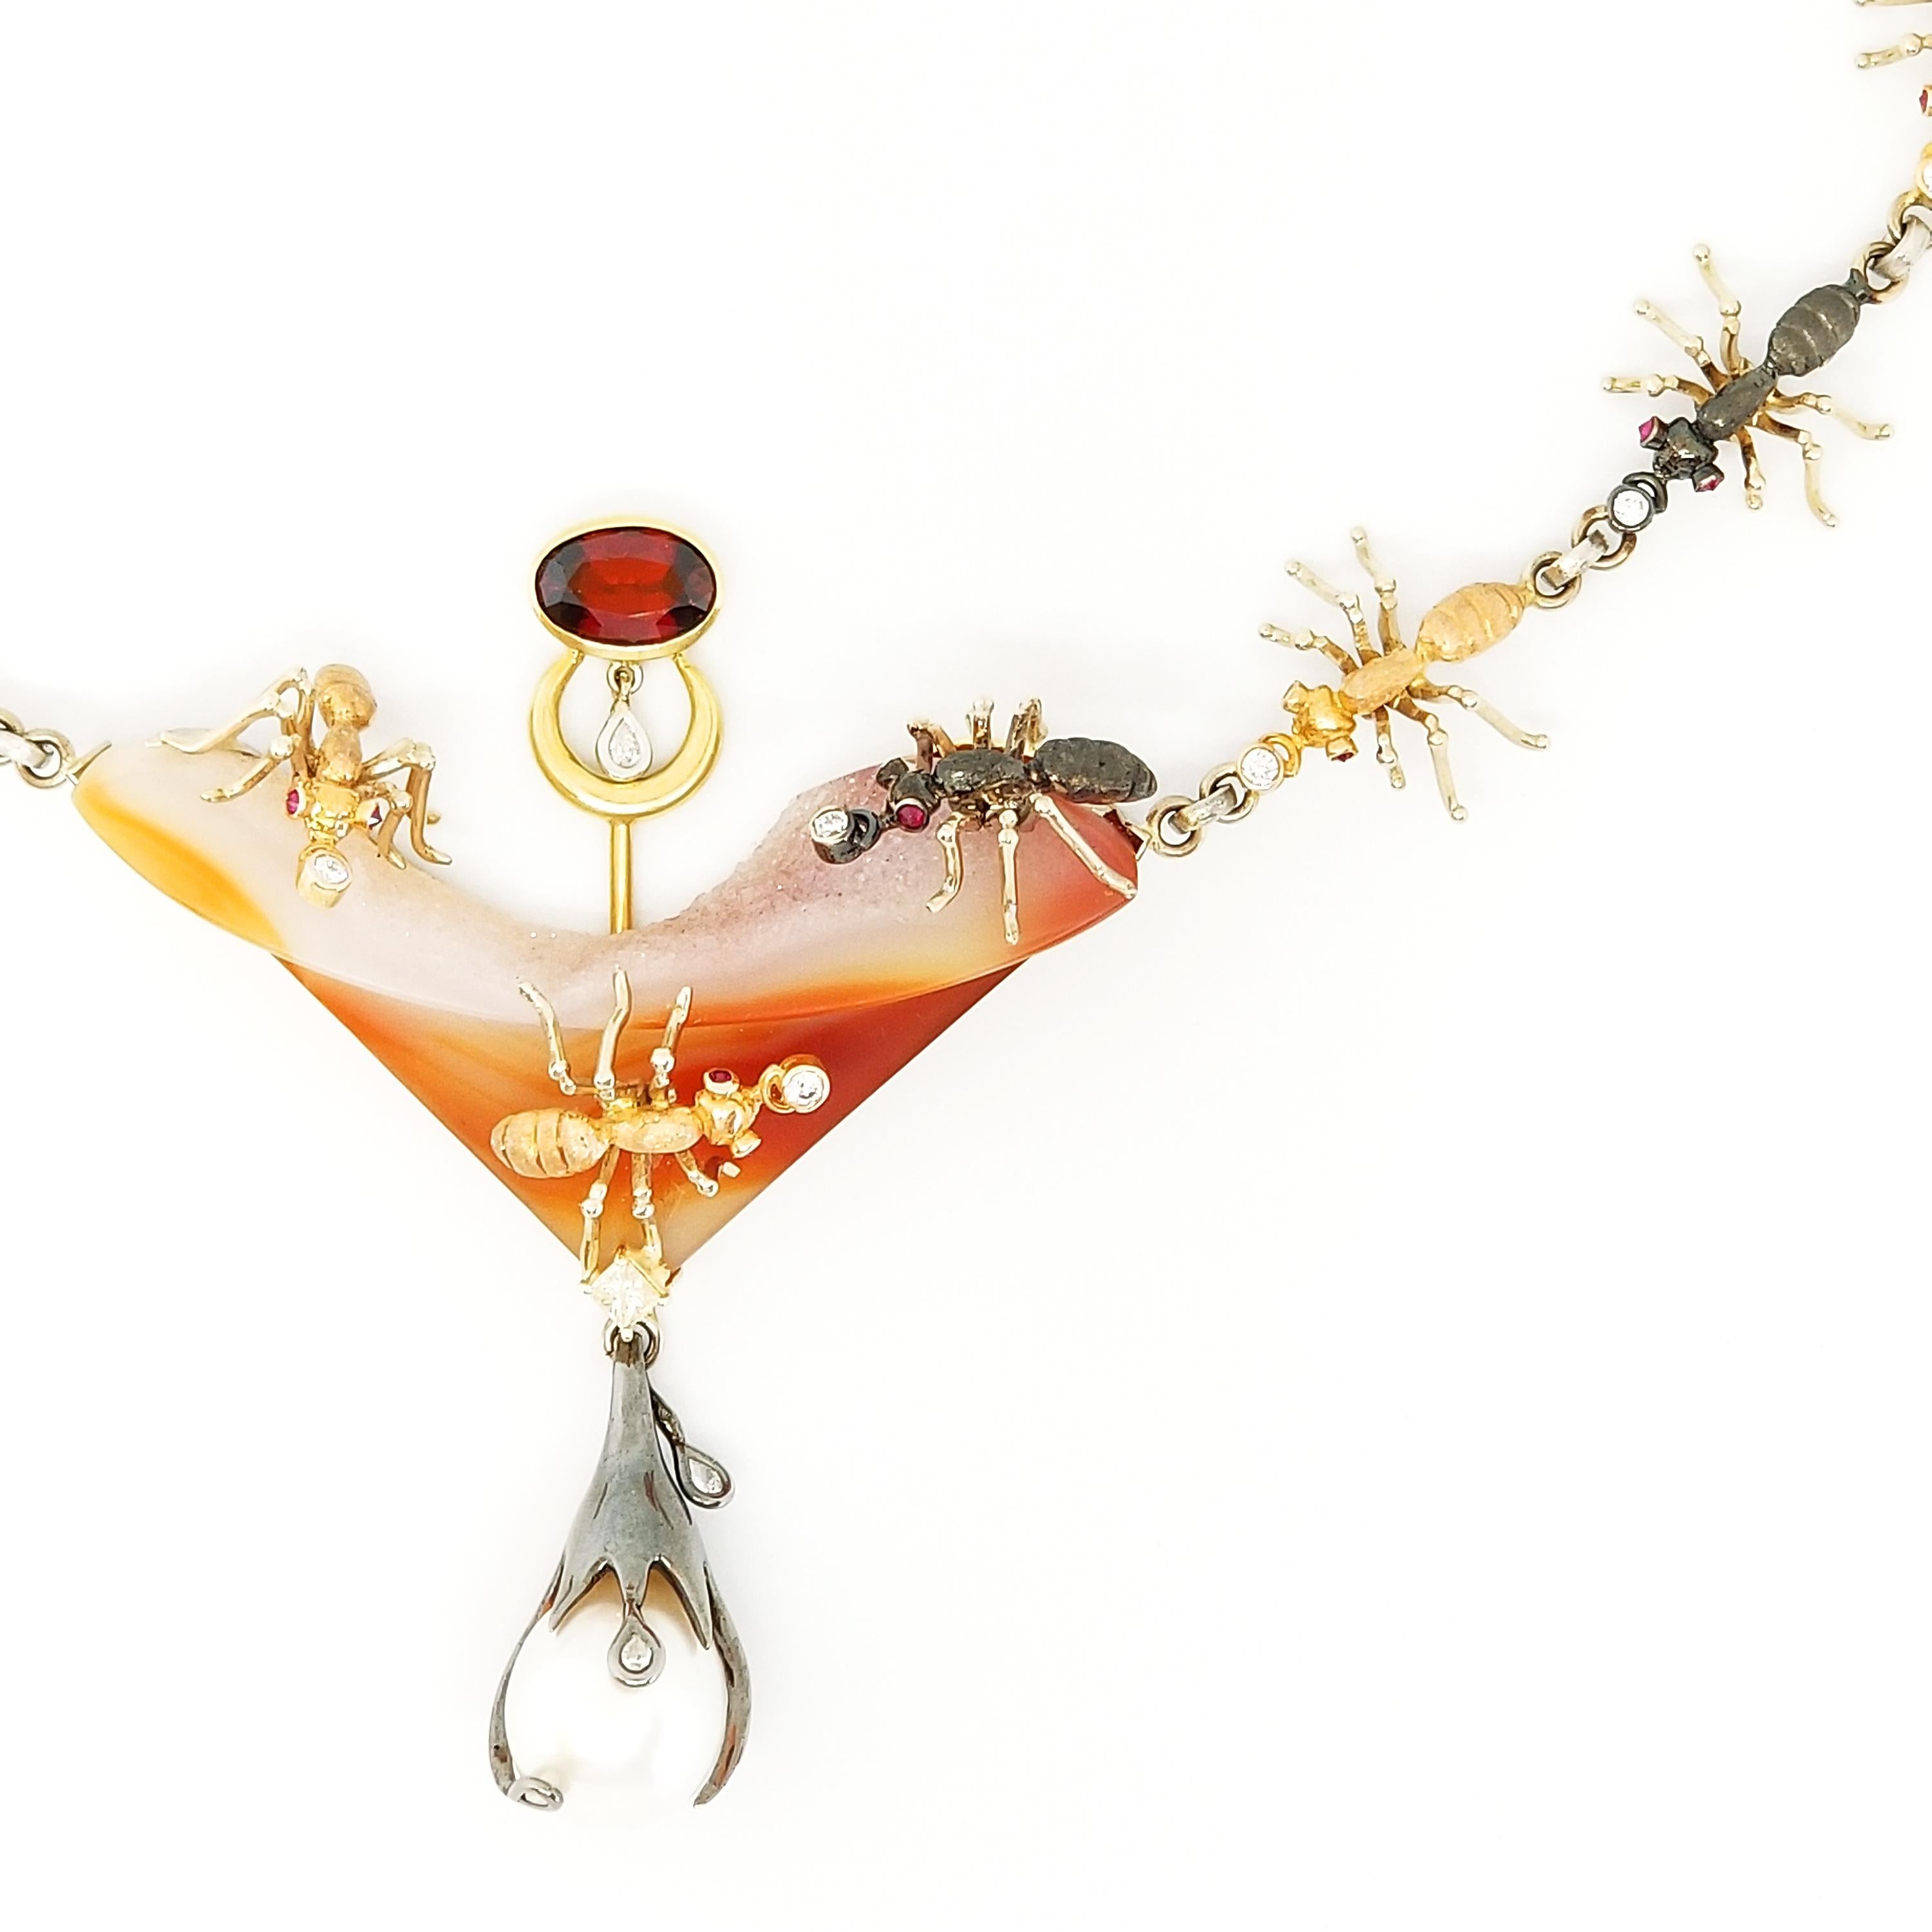 Diese individuell gestaltete und gefertigte, einzigartige Statement-Halskette des Kunsthandwerkers Tom Castor zeigt eine Sammlung von edelsteintragenden, handgefertigten Ameisen, die zart um den Hals marschieren. Dieses Signature Tom Castor Neck ist